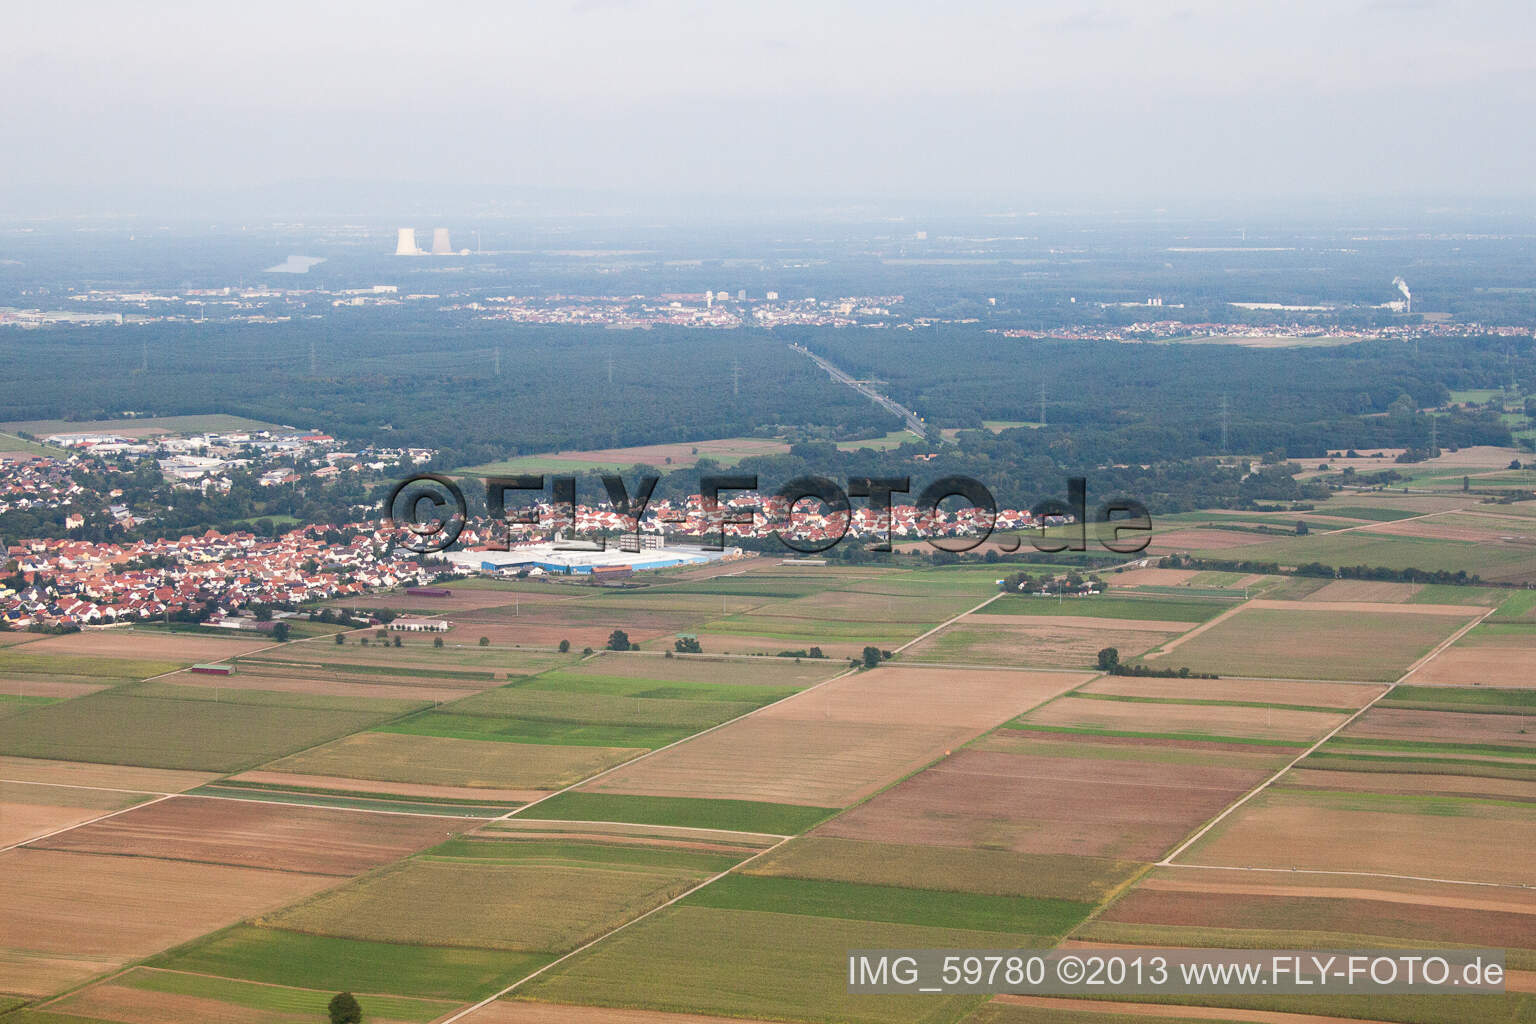 Bellheim dans le département Rhénanie-Palatinat, Allemagne vu d'un drone